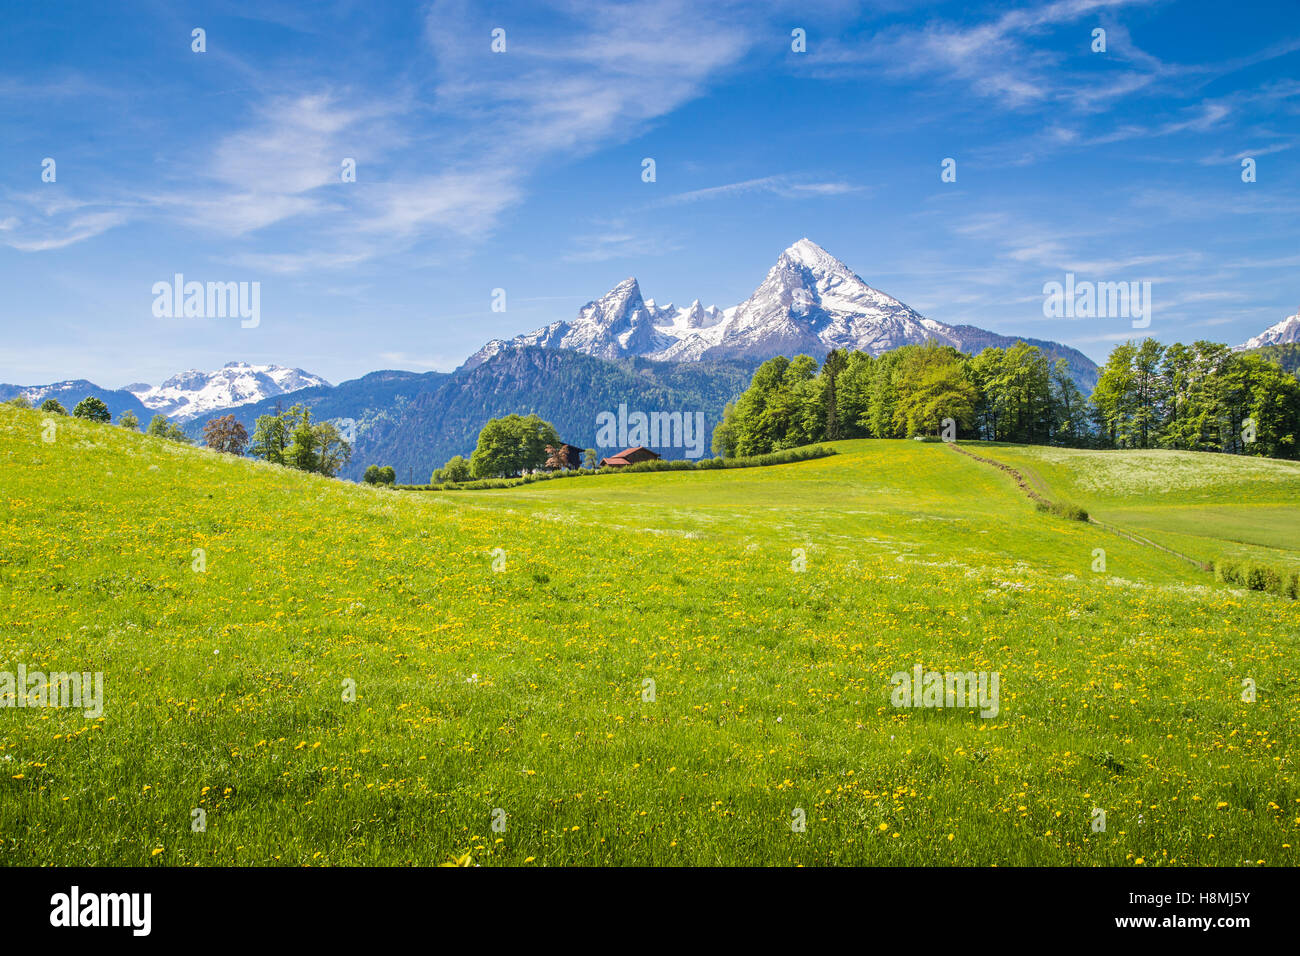 Idillico paesaggio delle Alpi con freschi prati verdi e fiori che sbocciano e innevate vette di montagna in background in s Foto Stock